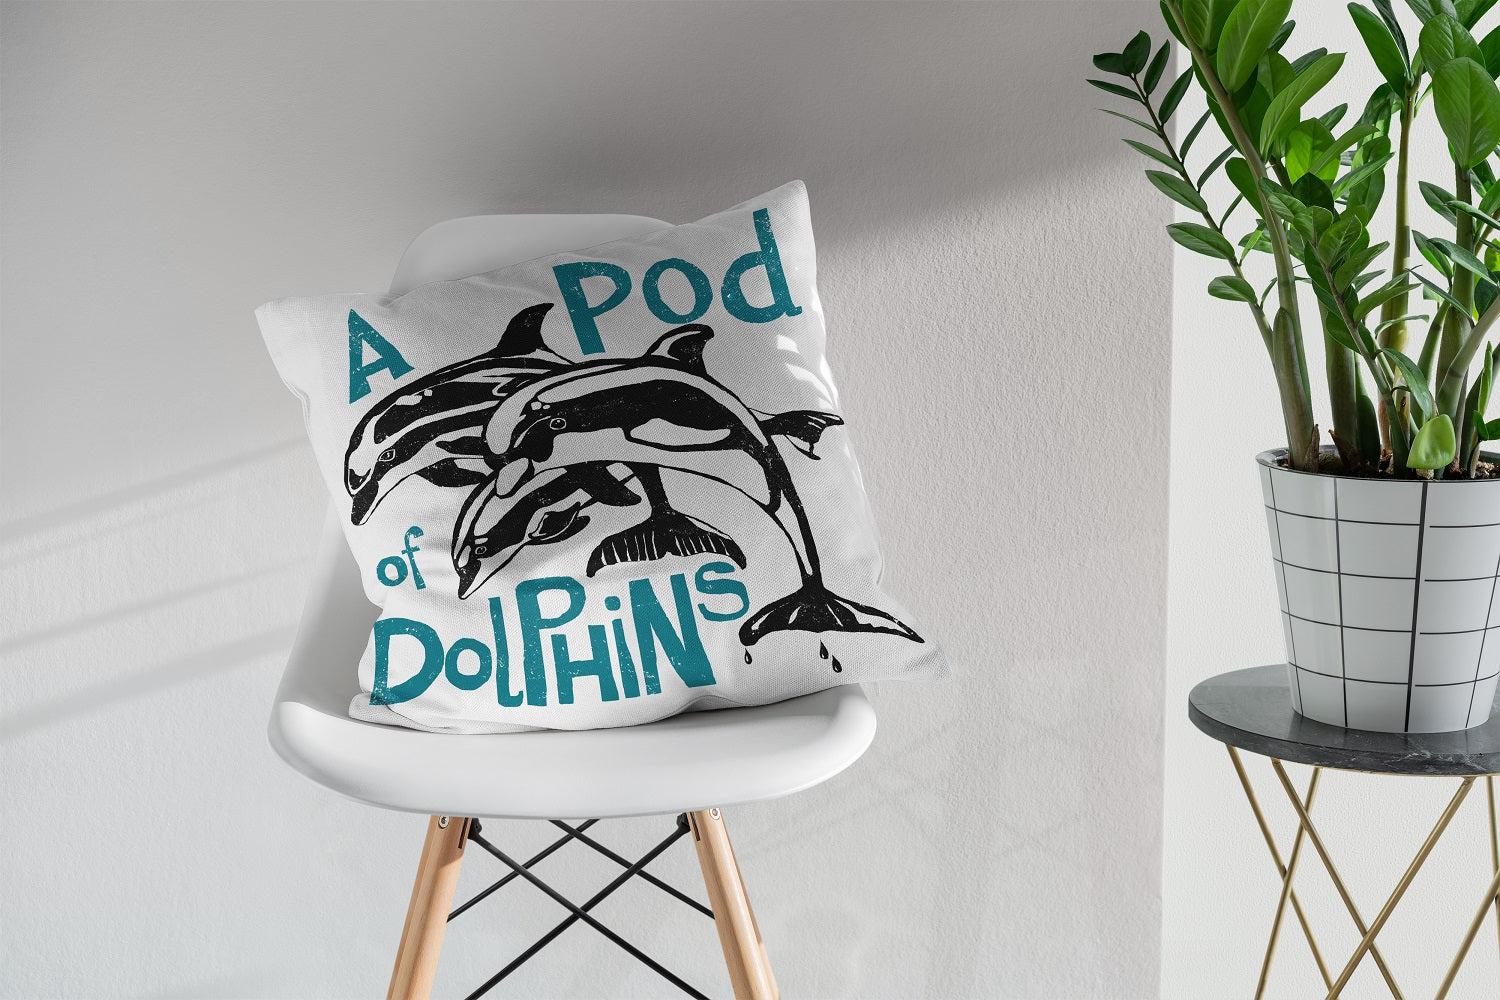 Pod of Dolphins - Collective Noun Cushion